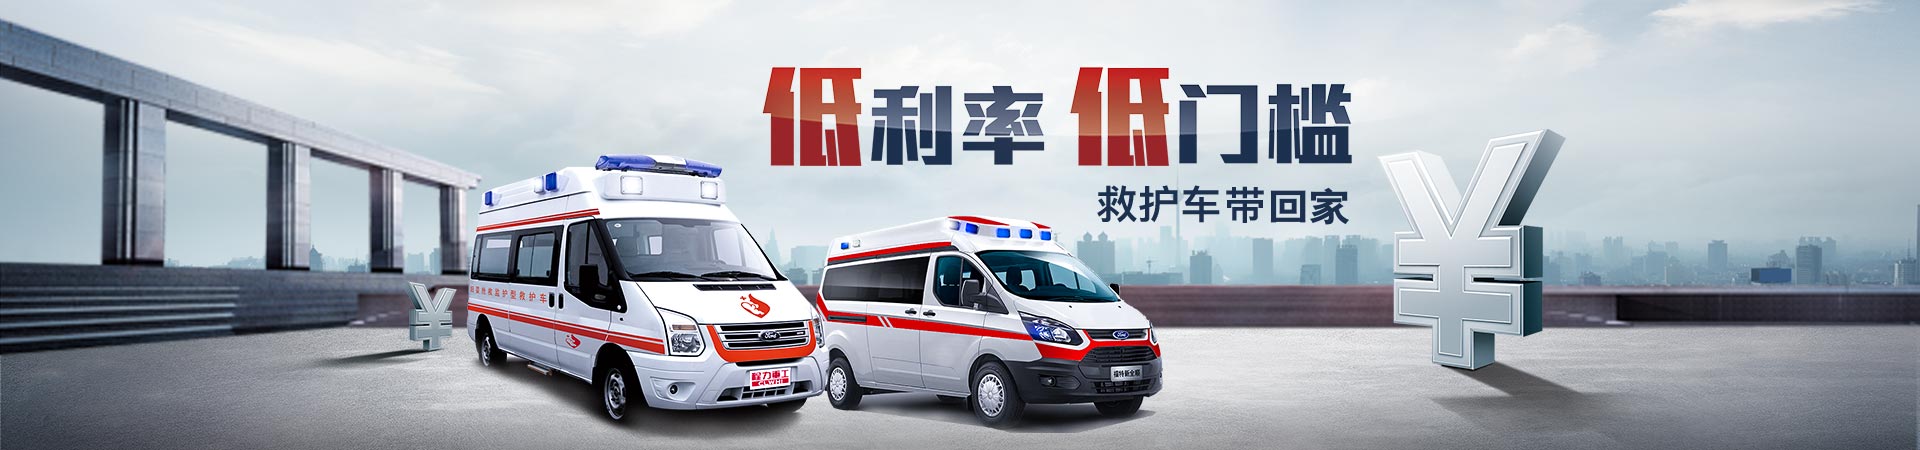 中国救护车为什么不是免费的